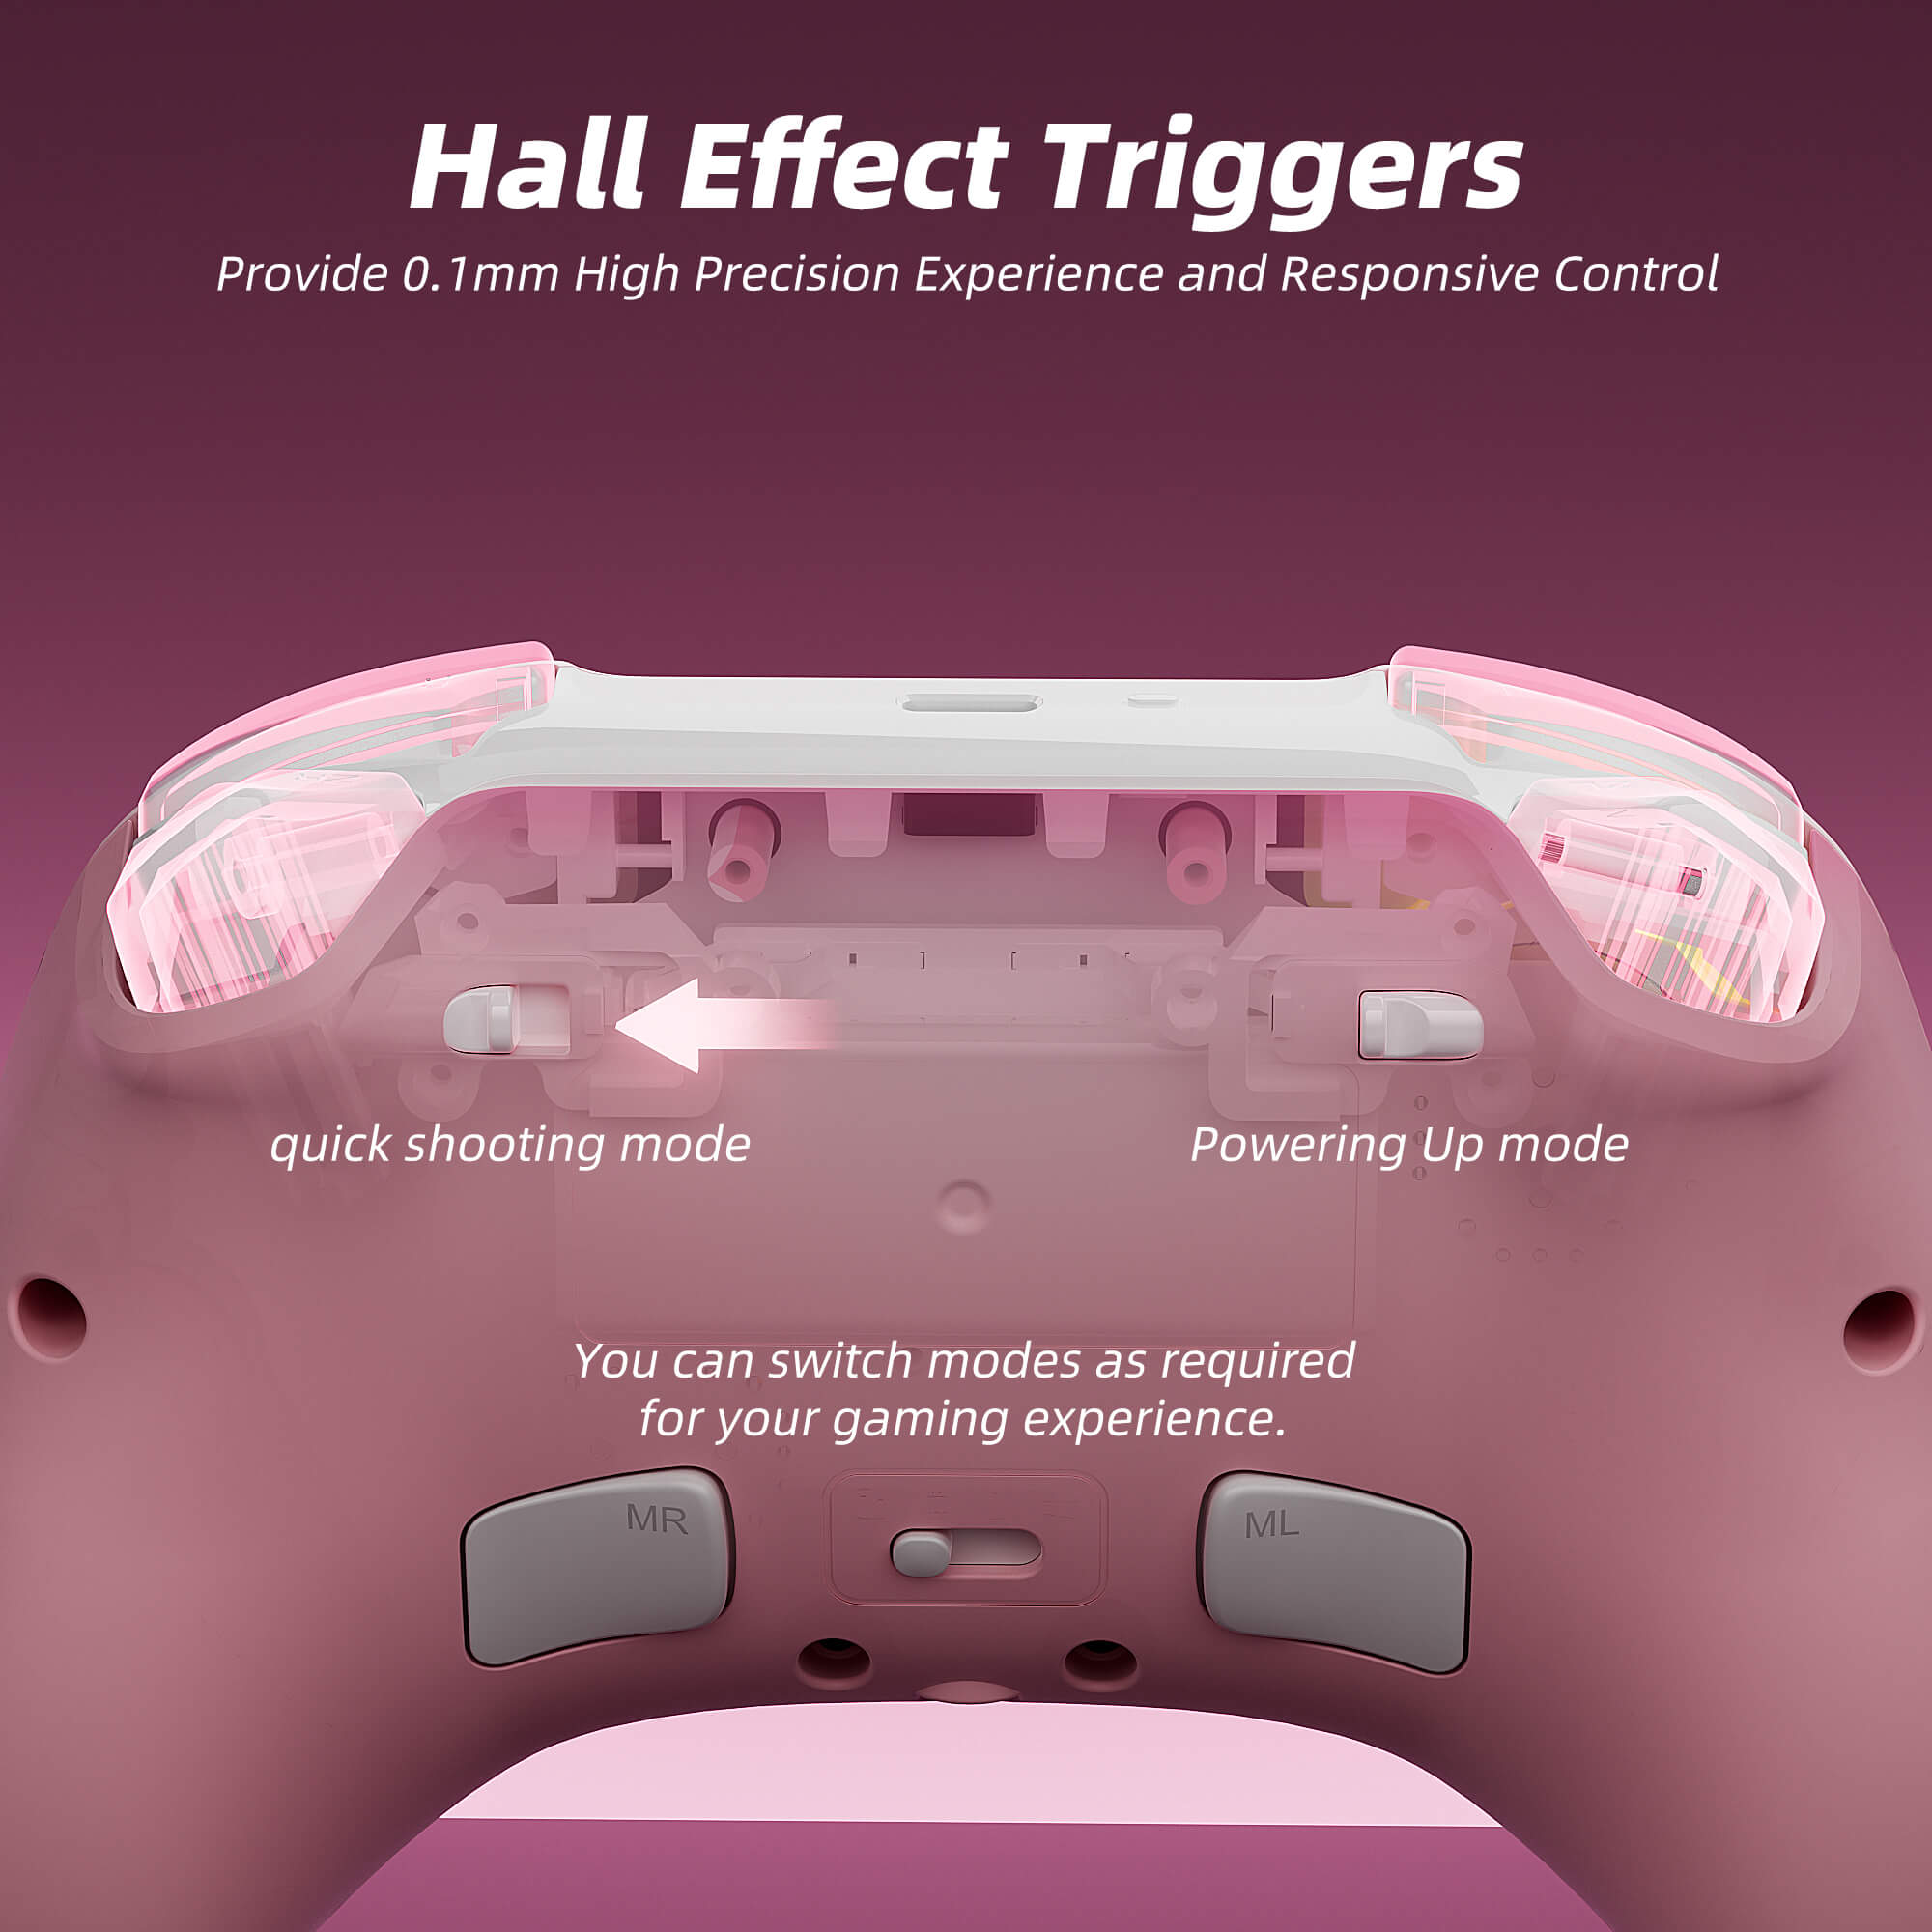 Hall effect Trigger (No Drift)